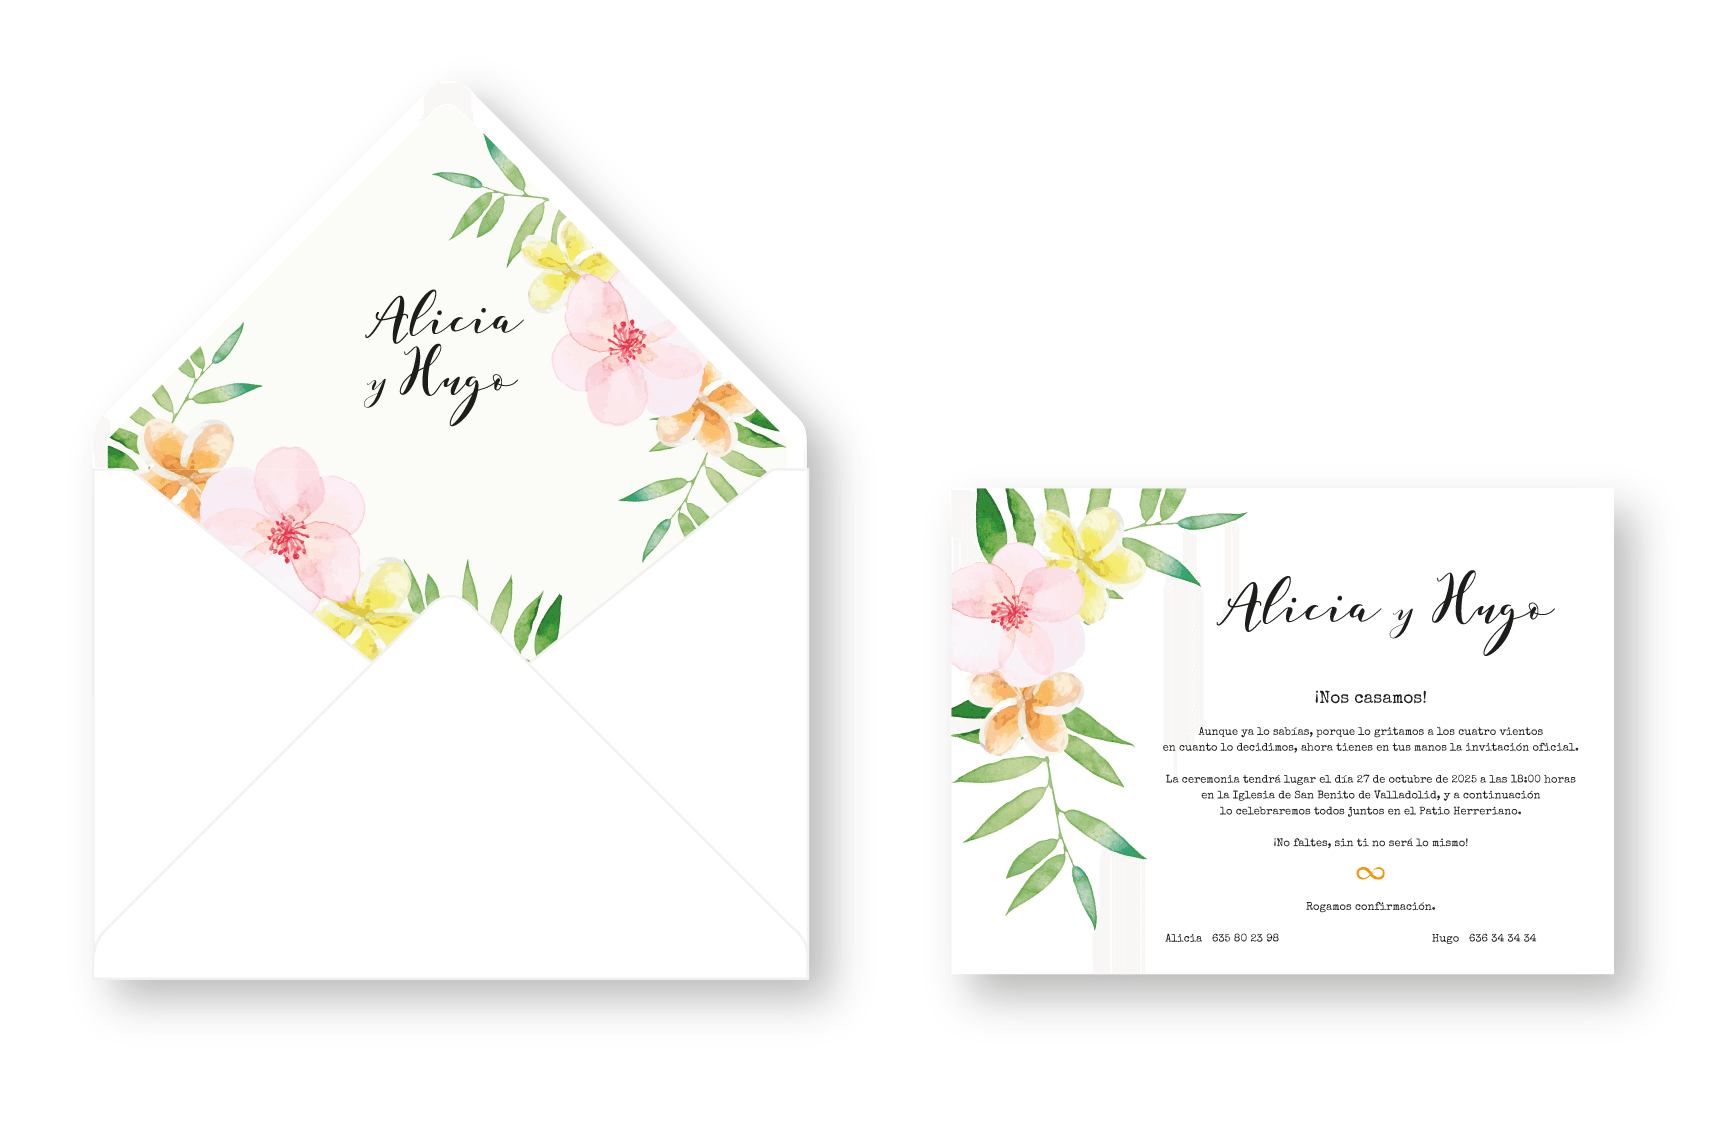 Invitaciones de boda originales? Las tenemos todas  Unique wedding cards,  Wedding cards, Wedding invitations